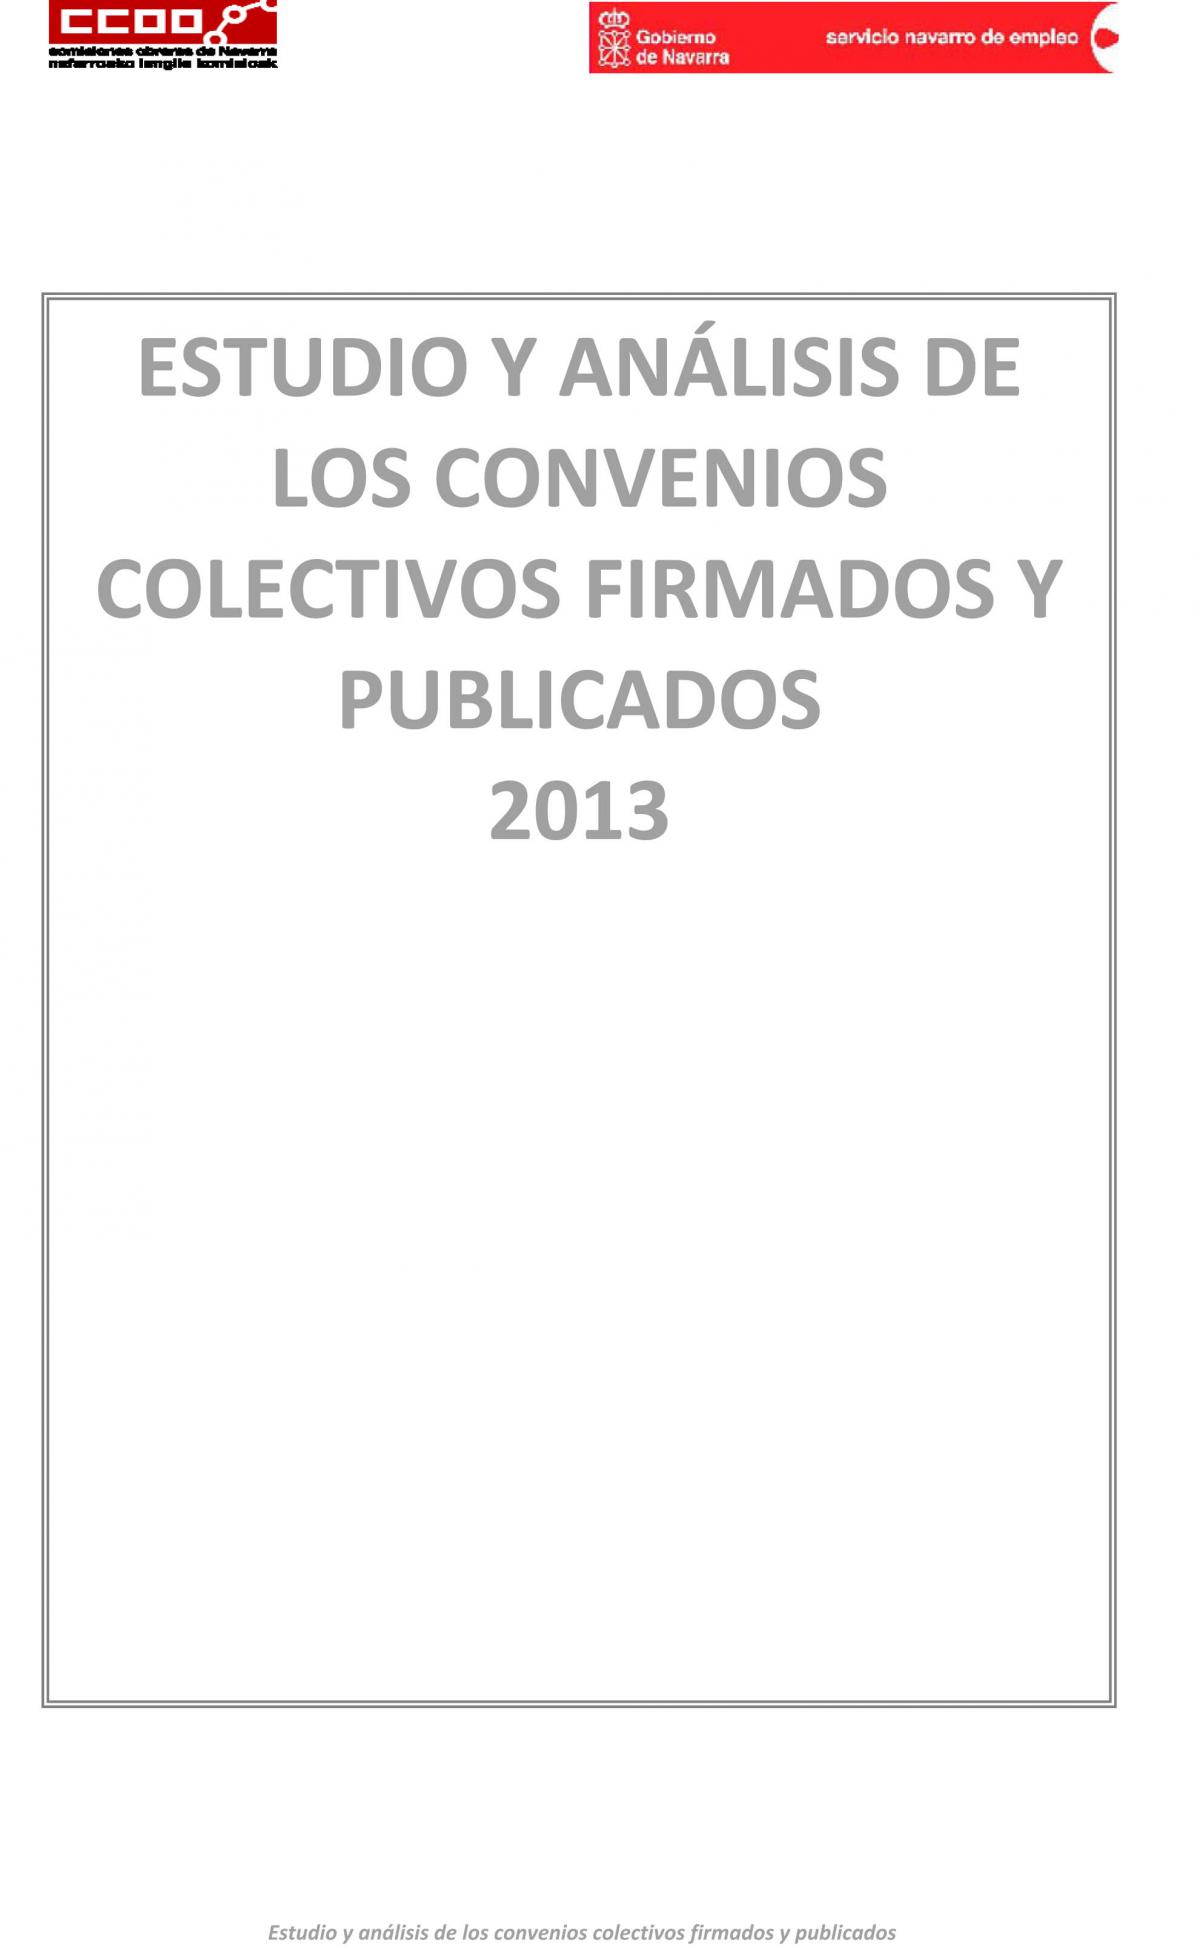 Estudio y análisis de los convenios colectivos firmados y publicados en 2013